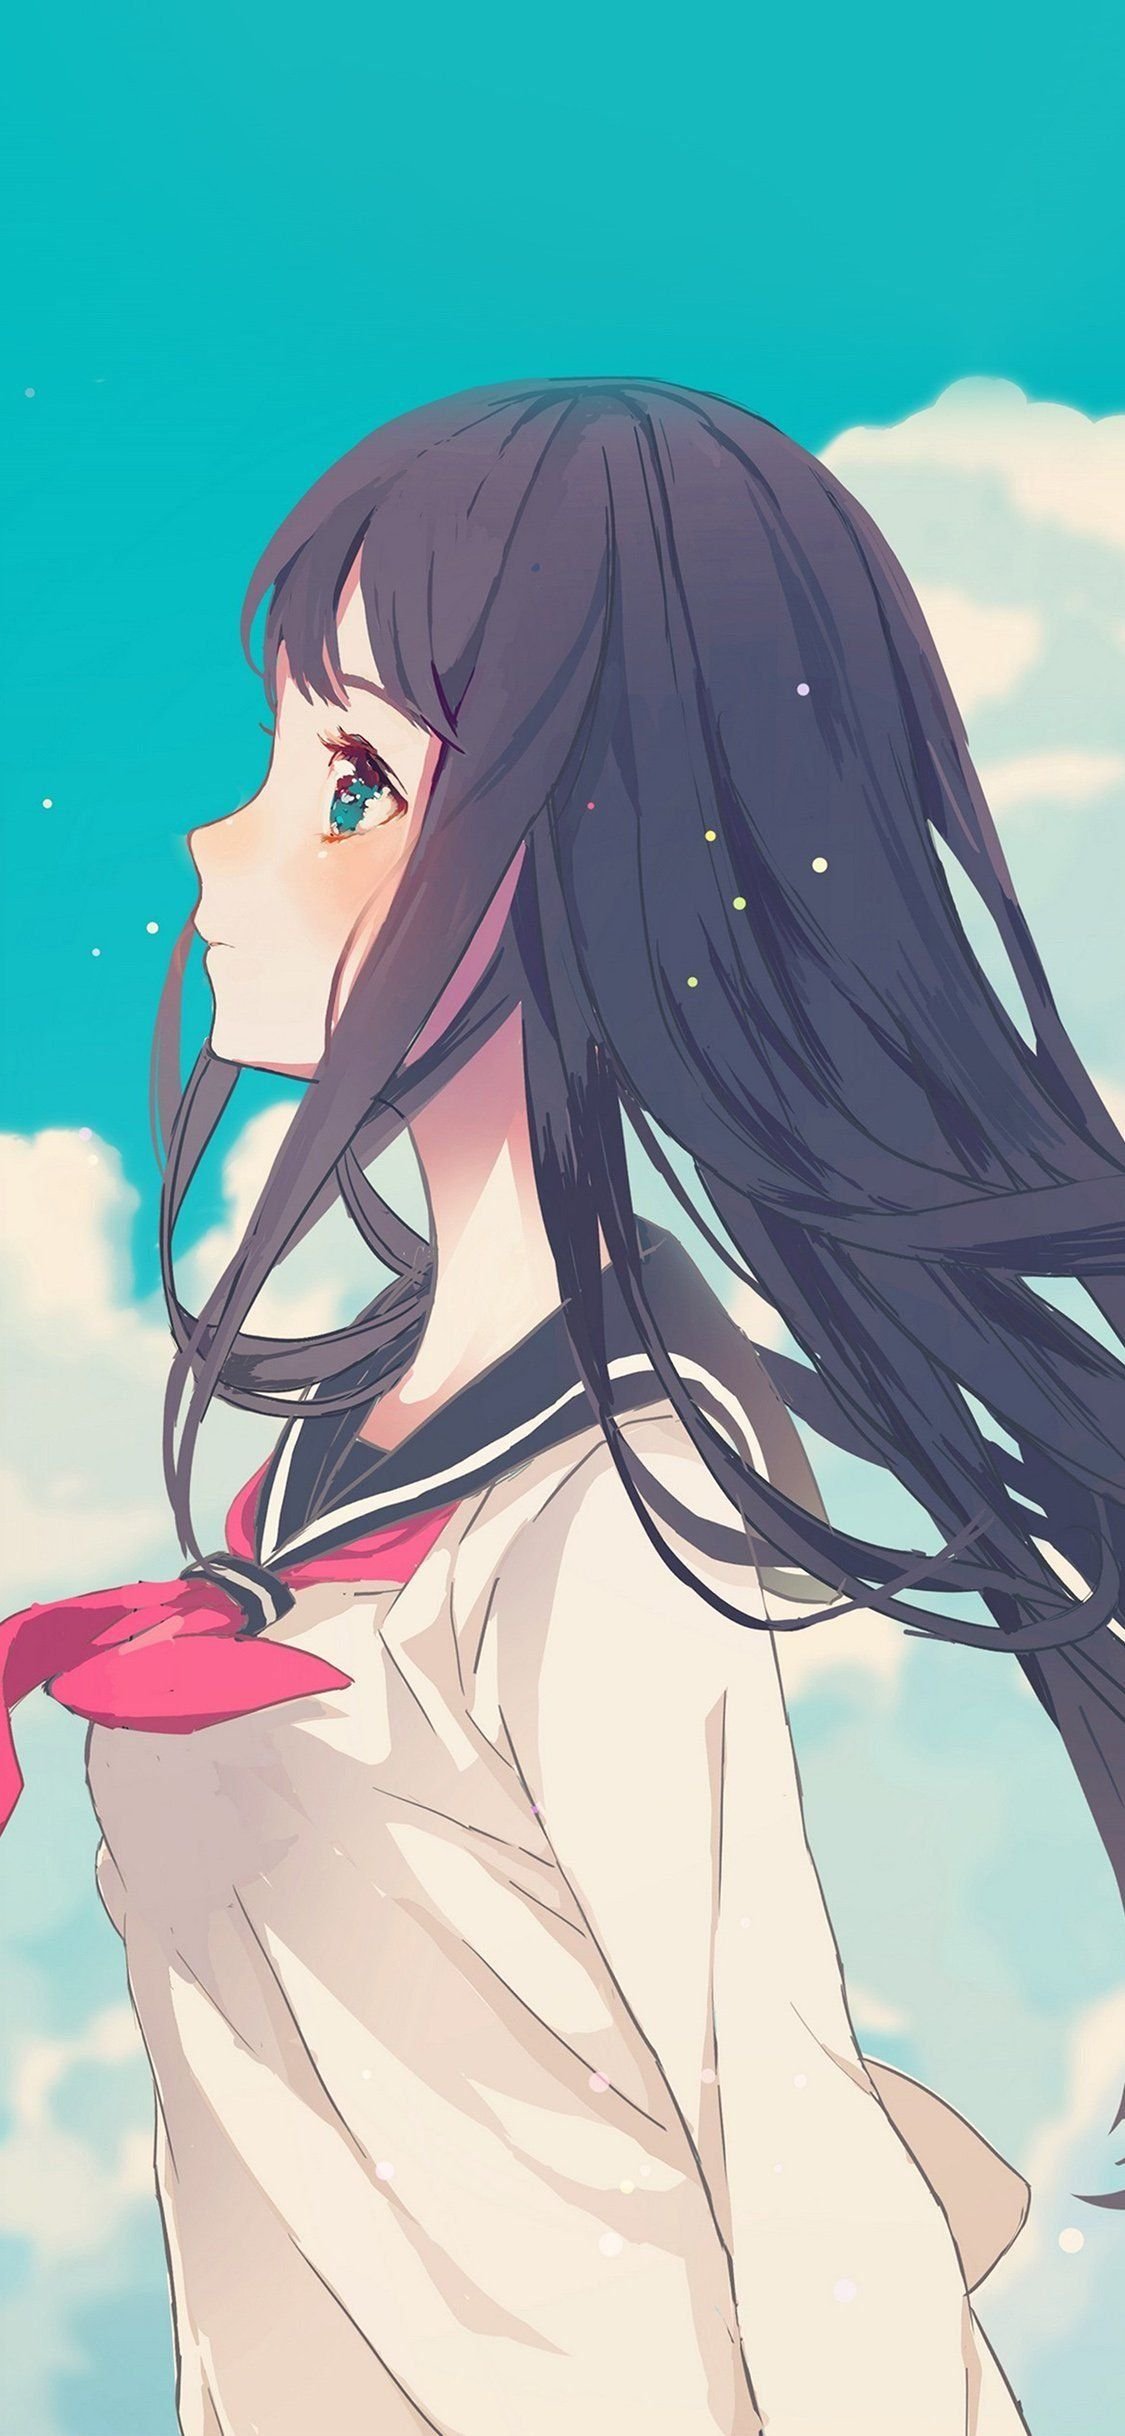 Animes girl kawaii Wallpapers Download